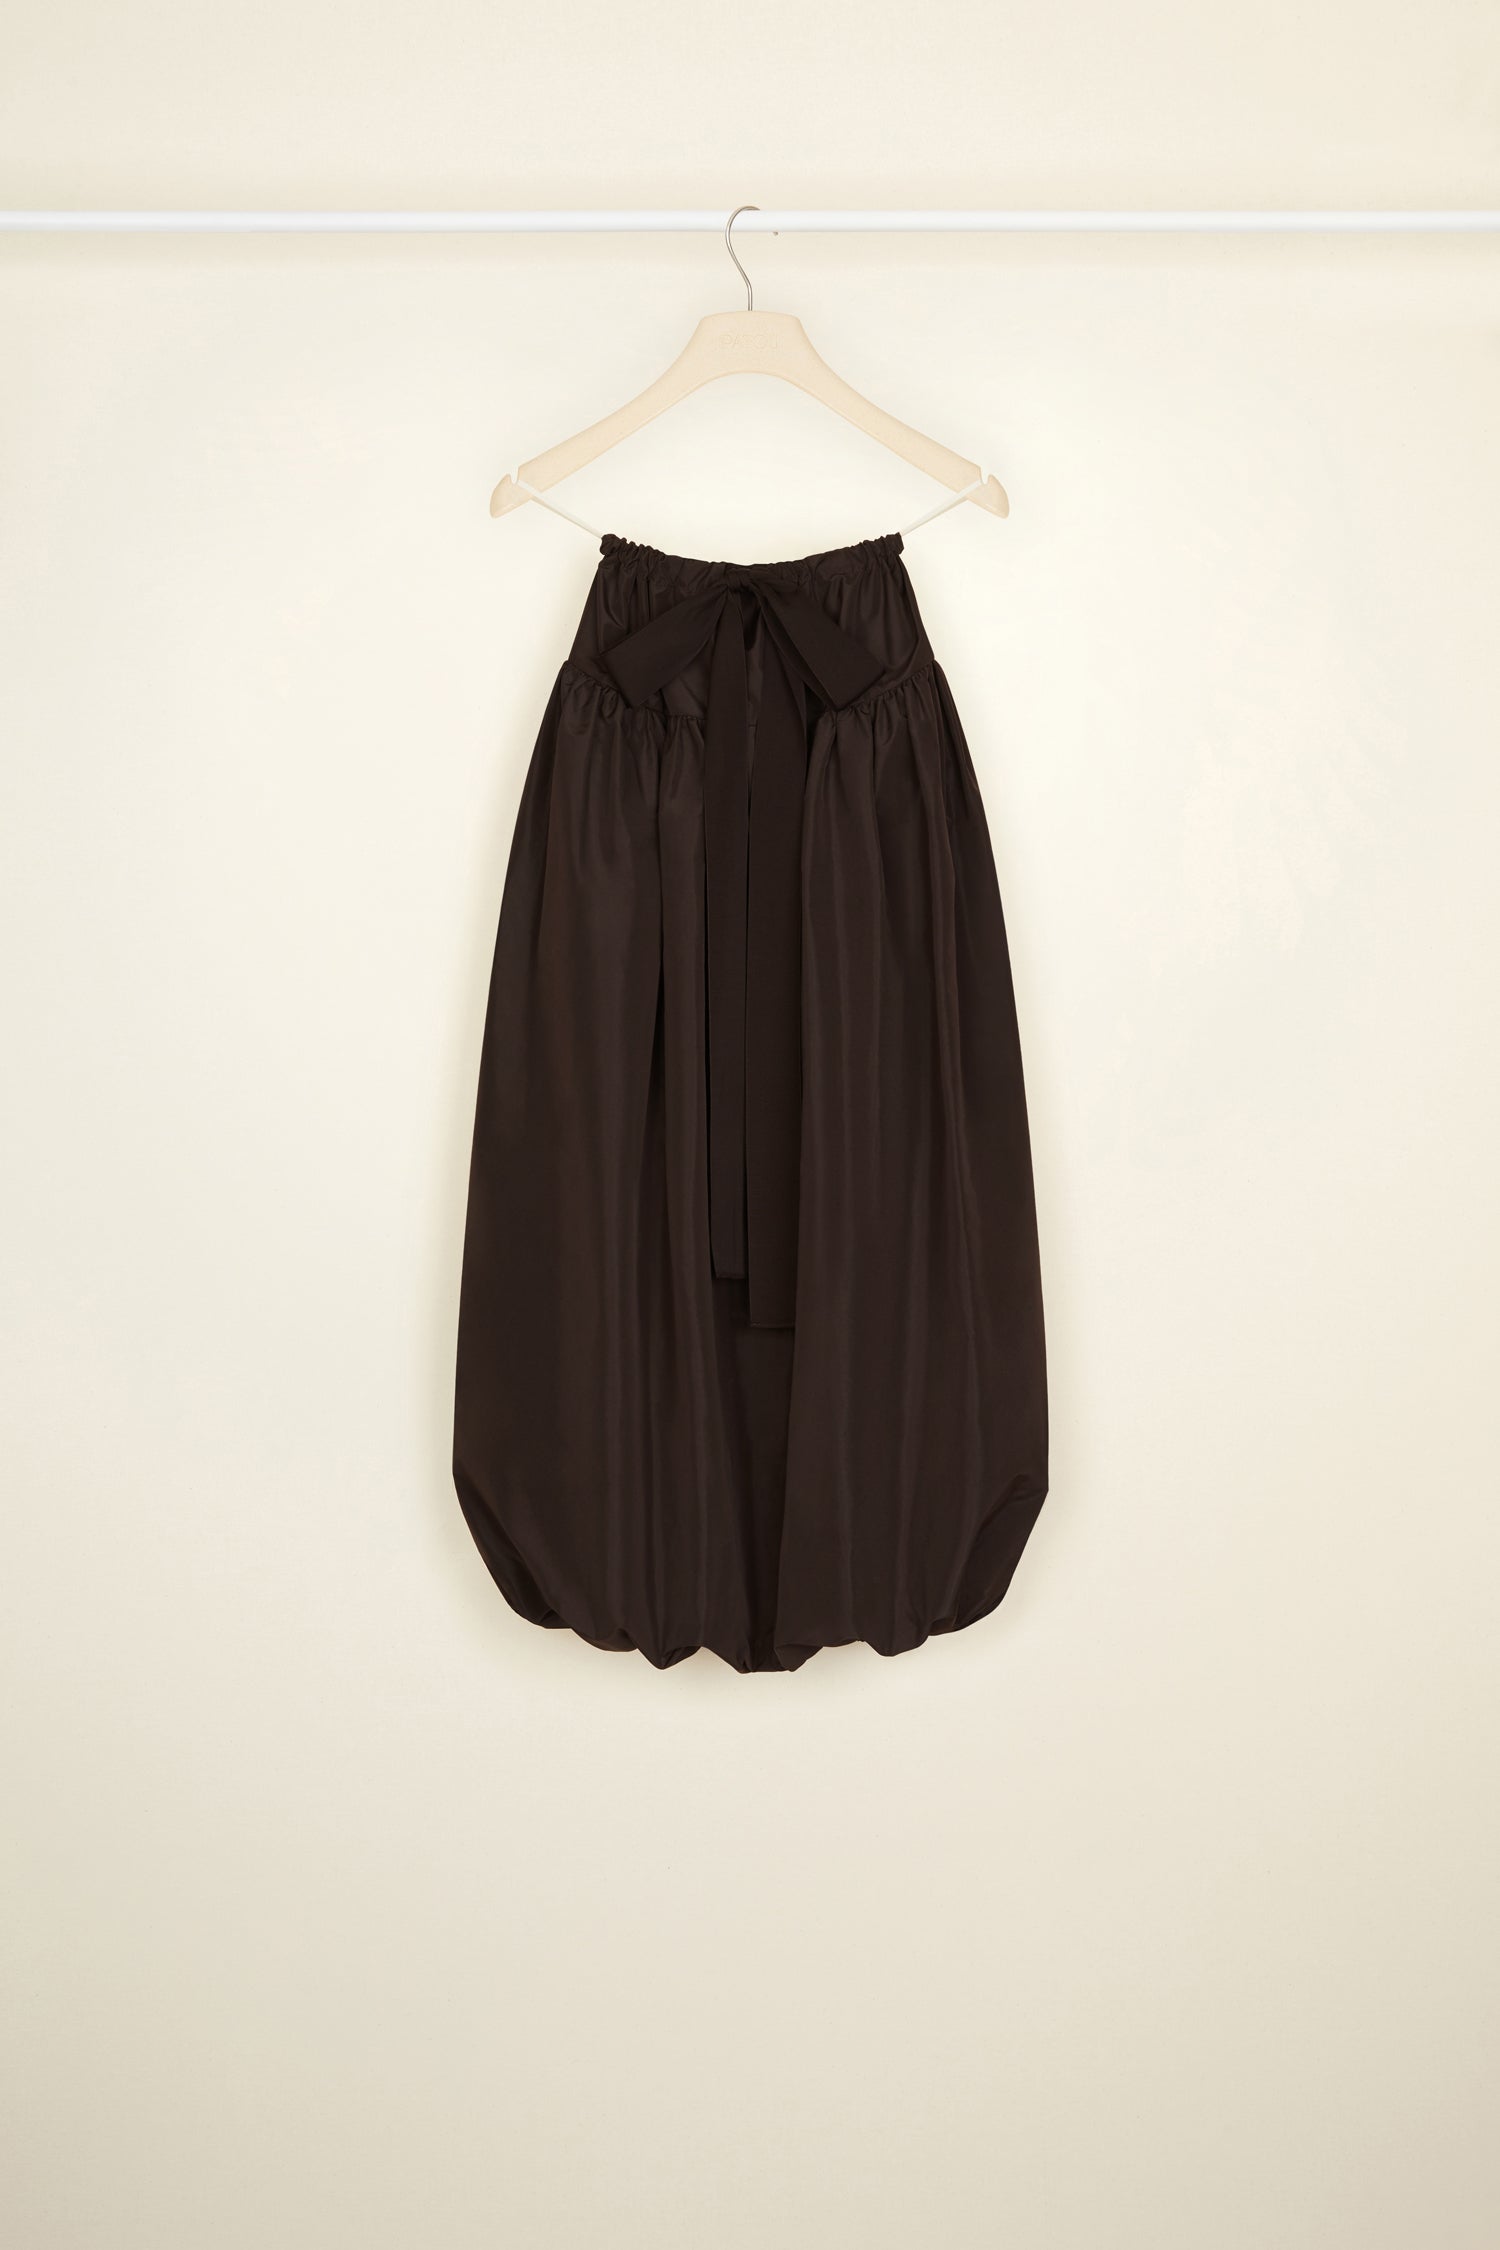 【新品本物】 PATOU ファイユ バブル スカート スカート サイズを選択してください:FR34(XS以下)